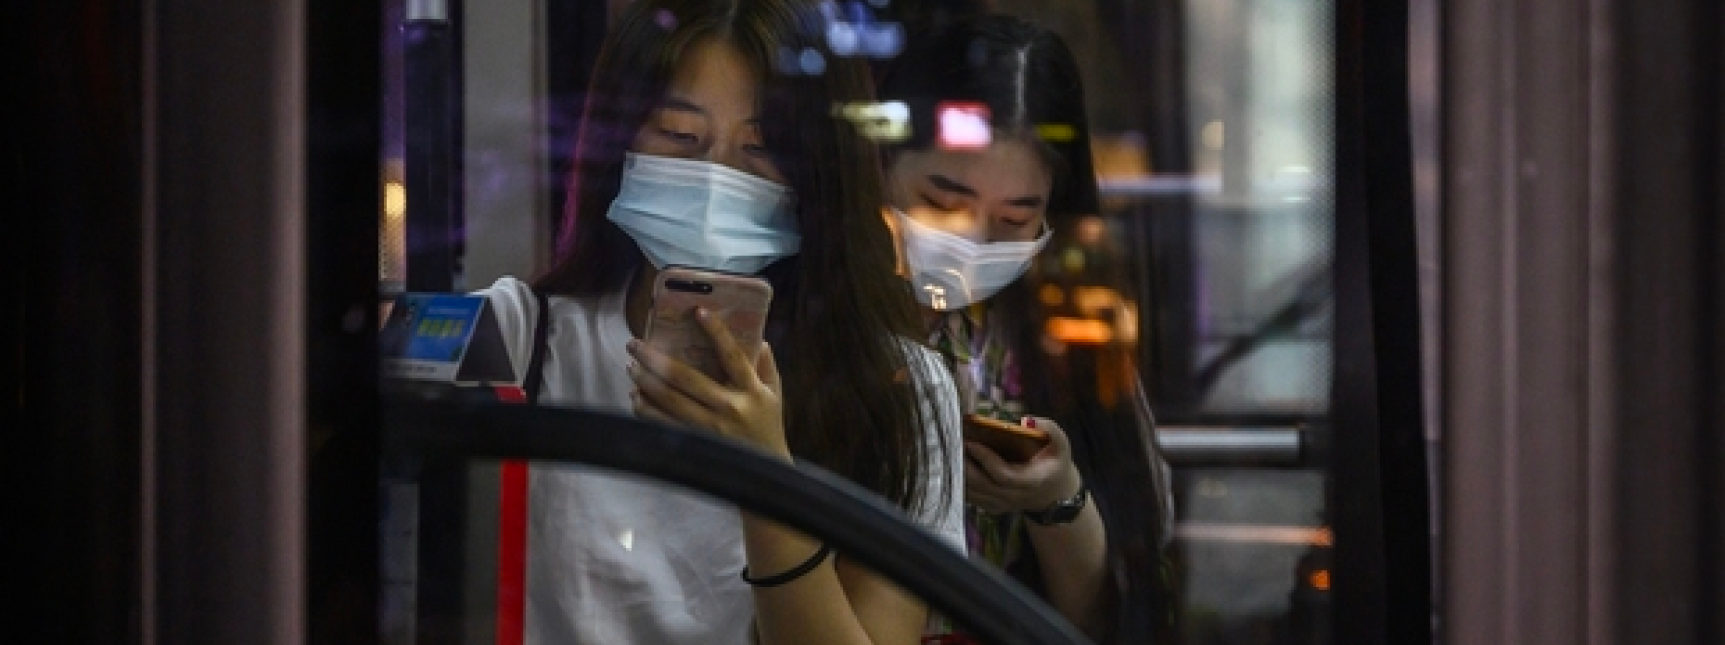 Women in mask on public transit